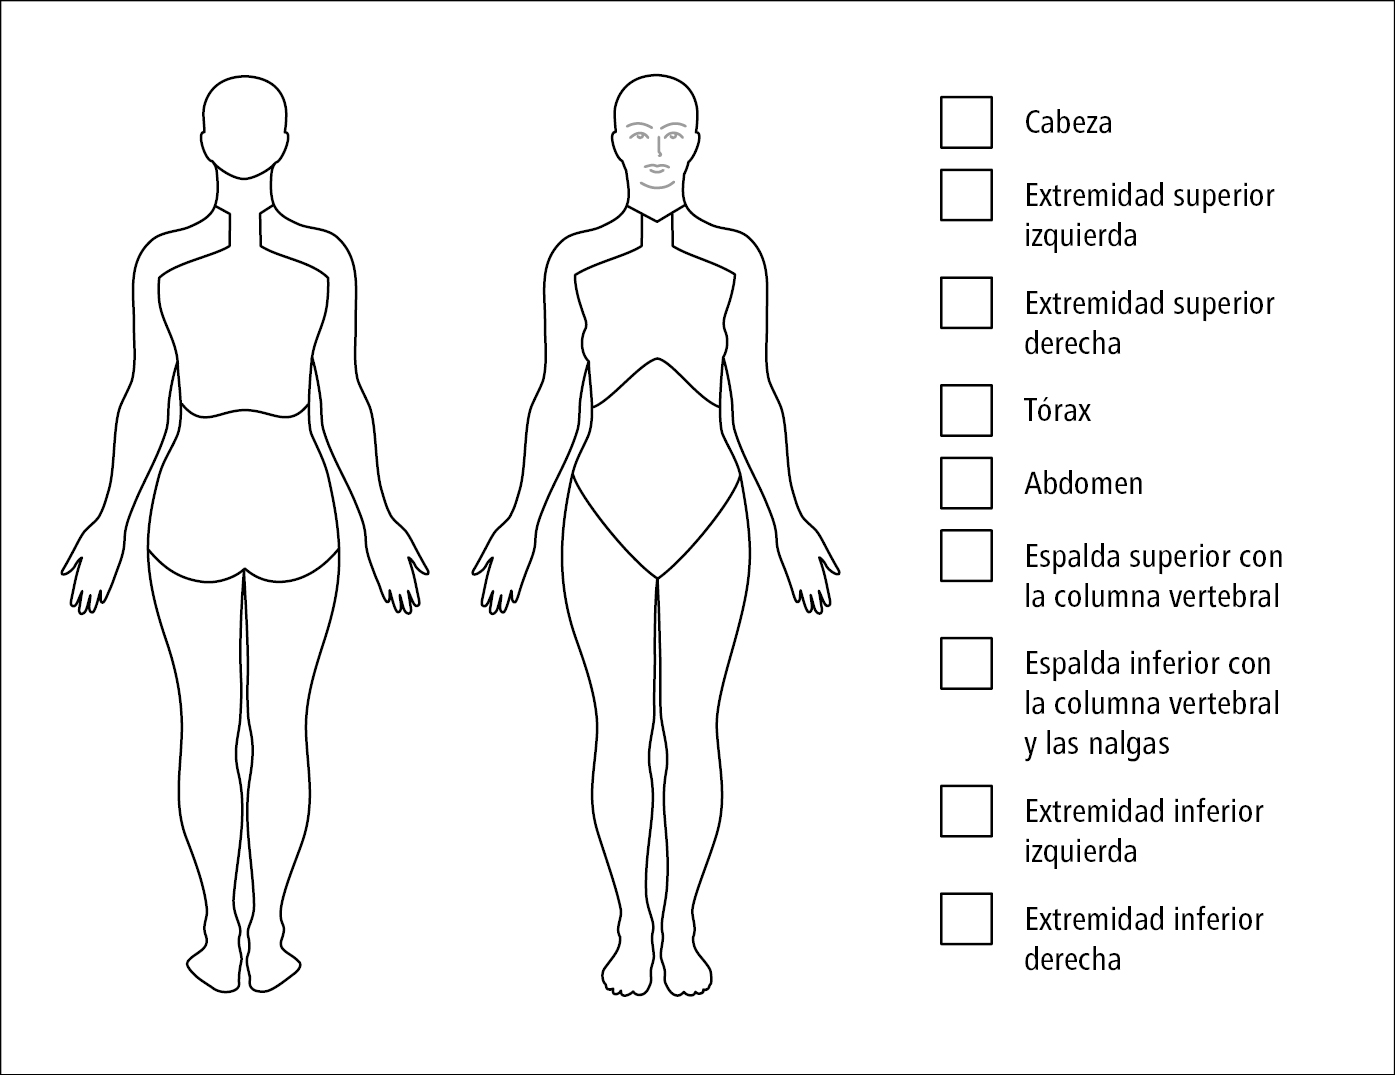    Fig. 17.20-2.  Zonas del cuerpo establecidas para la evaluación del dolor de localización múltiple como criterio diagnóstico de fibromialgia según la AAPT 